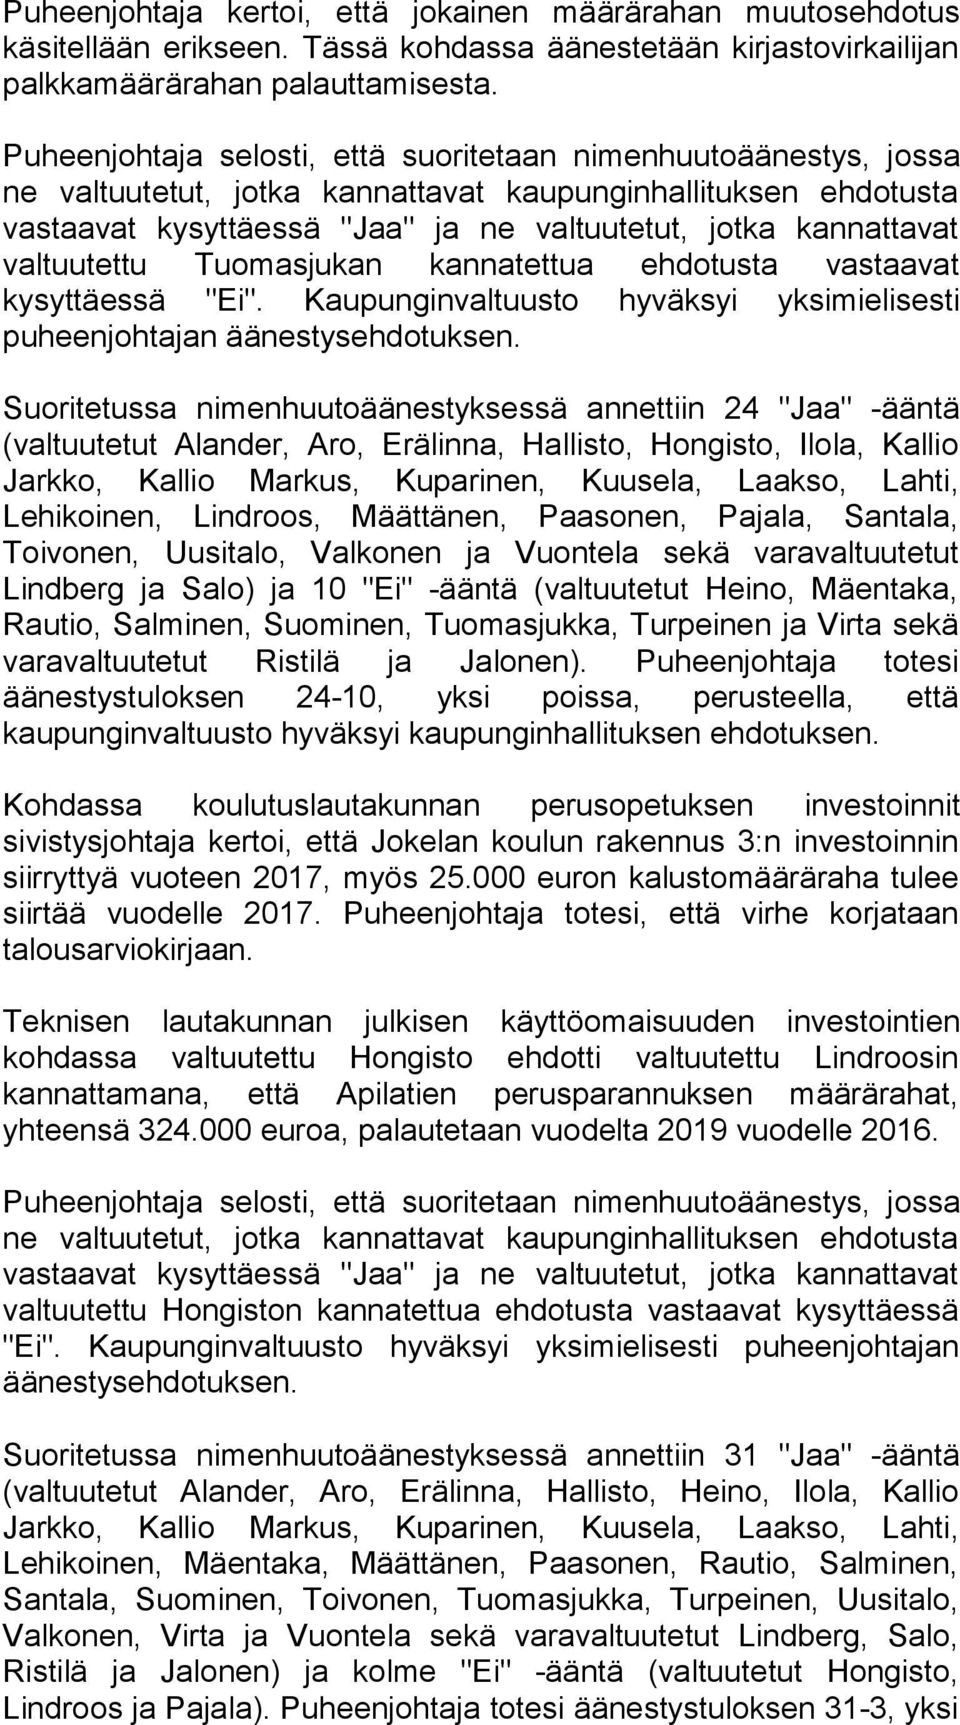 valtuutettu Tuomasjukan kannatettua ehdotusta vastaavat kysyttäessä "Ei". Kaupunginvaltuusto hyväksyi yksimielisesti puheenjohtajan äänestysehdotuksen.